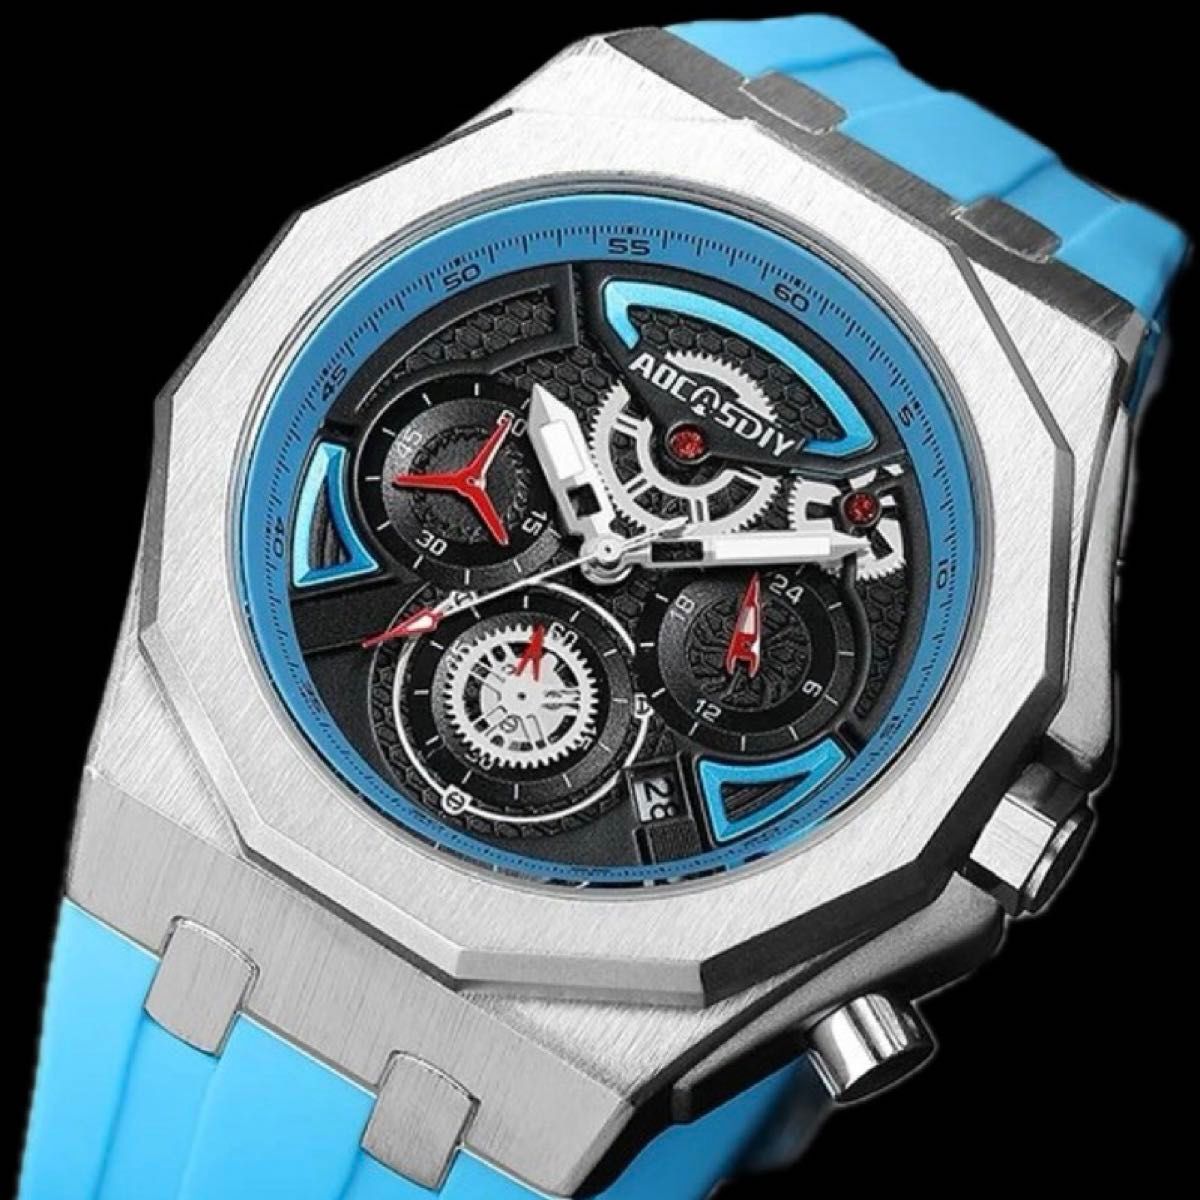 新品 AOCASDIY オマージュクロノグラフ ウォッチ ラバーストラップ メンズ腕時計 ライトブルー